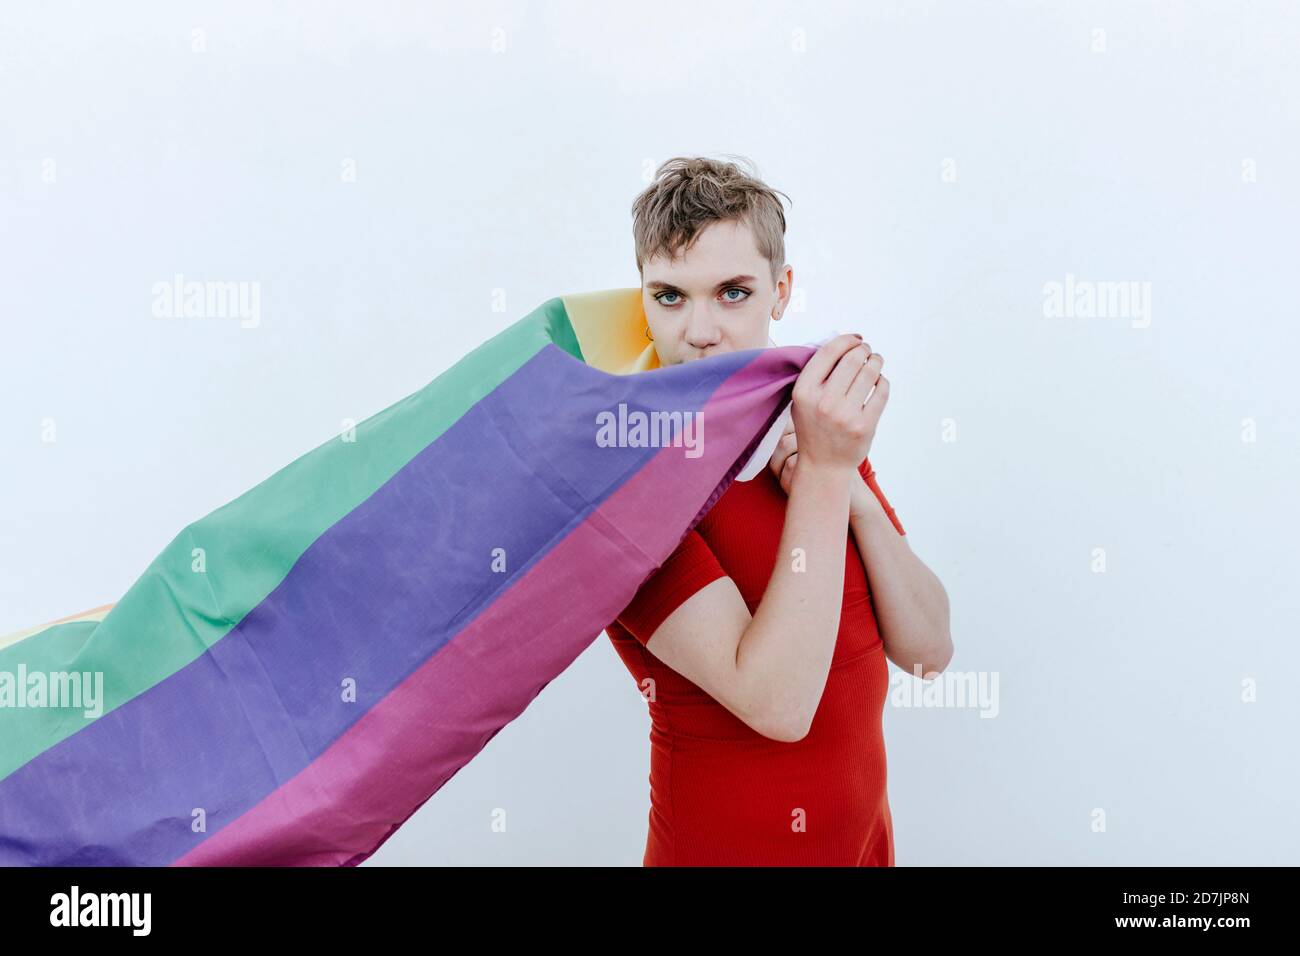 Nicht-binäre Person hält Regenbogenfahne, während sie vor weißem Hintergrund steht Stockfoto